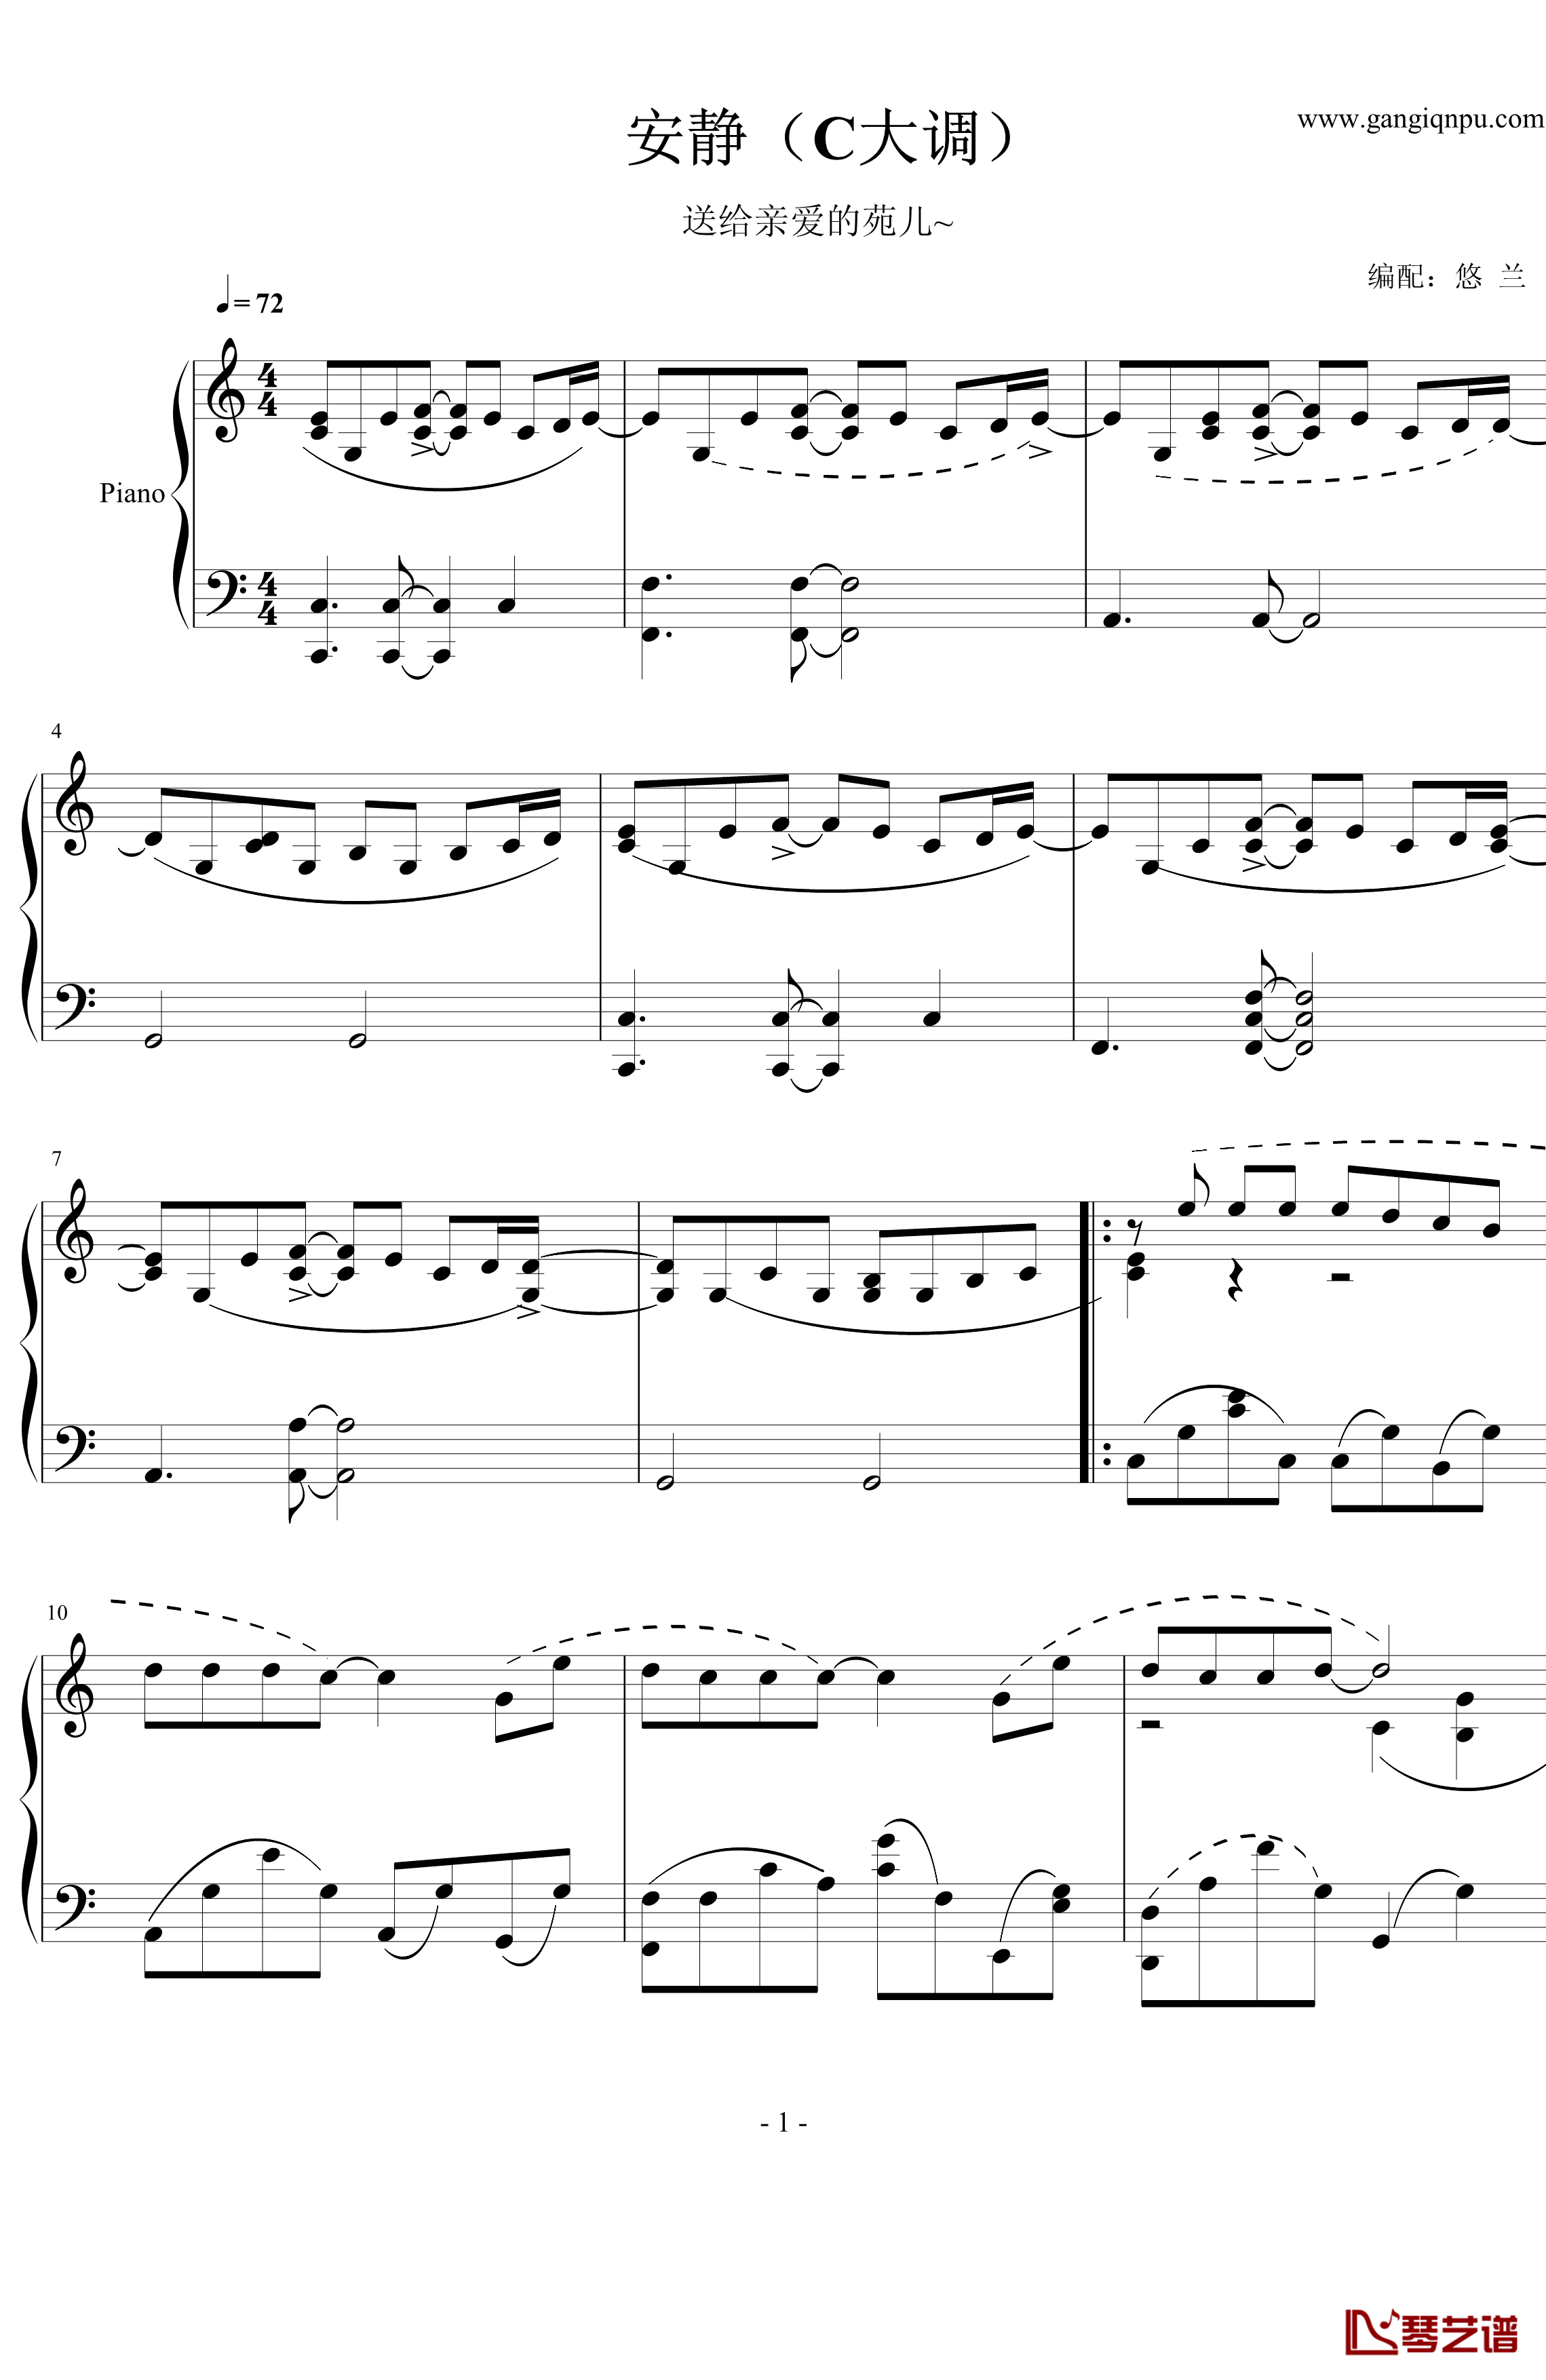 安静钢琴谱-C大调-周杰伦1